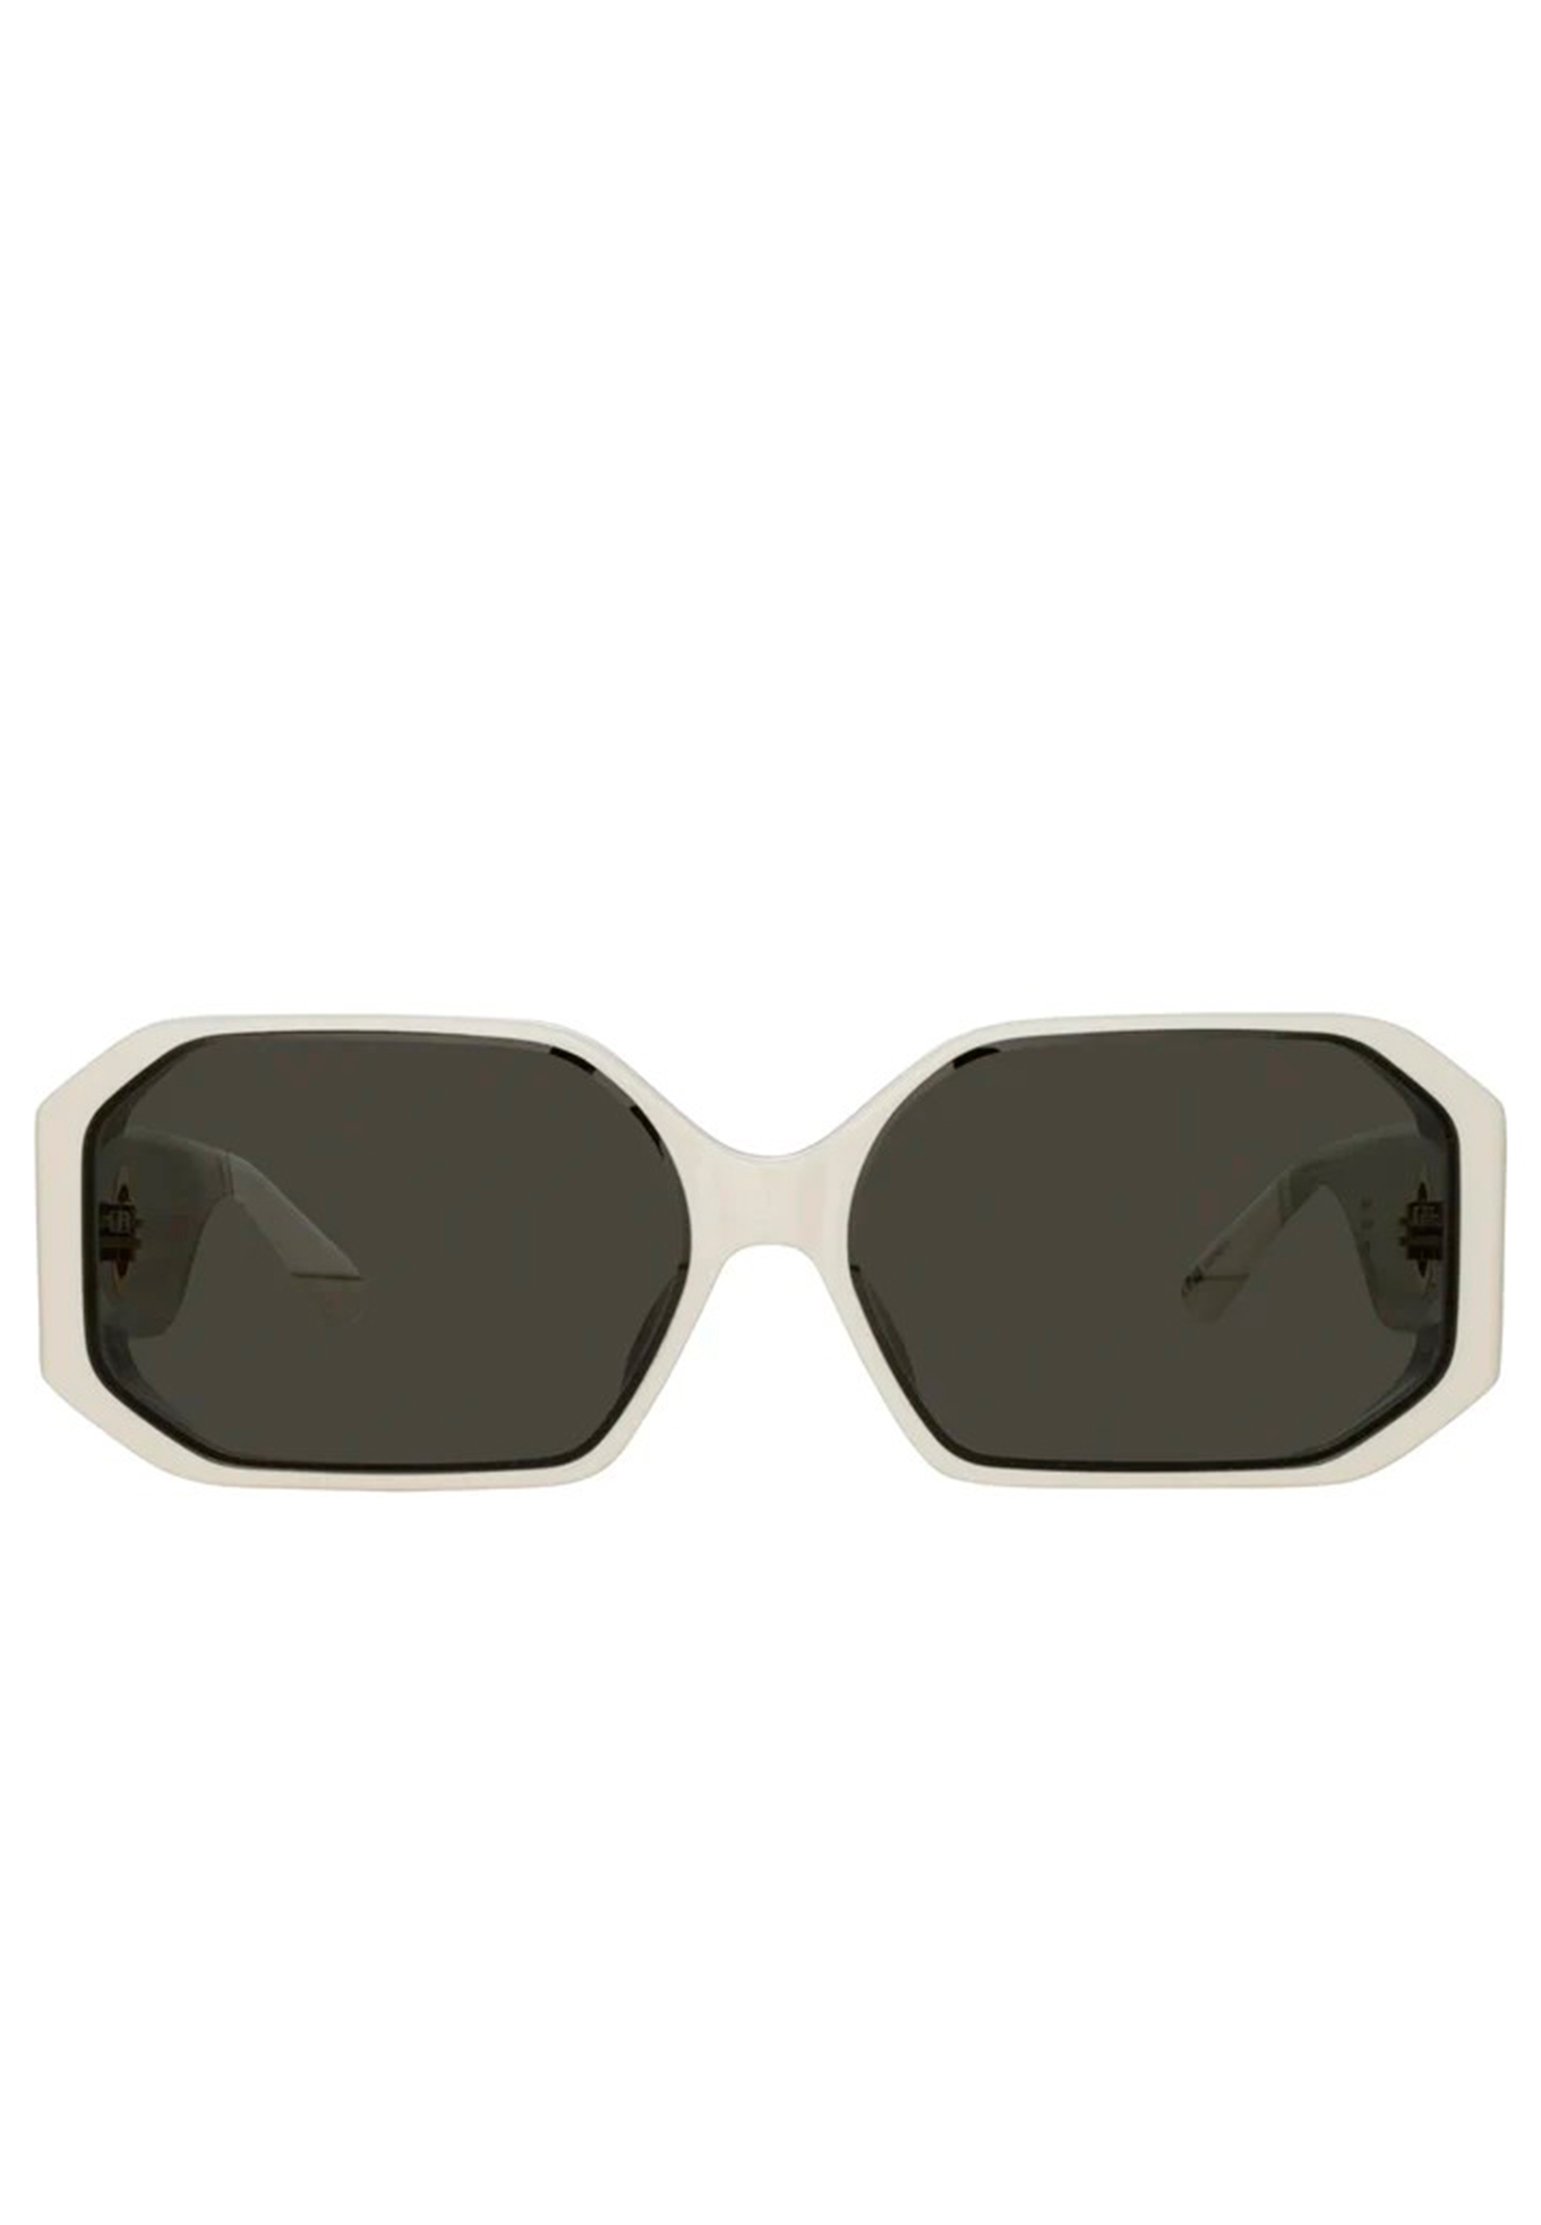 Sunglasses LINDA FARROW Color: white (Code: 4020) in online store Allure